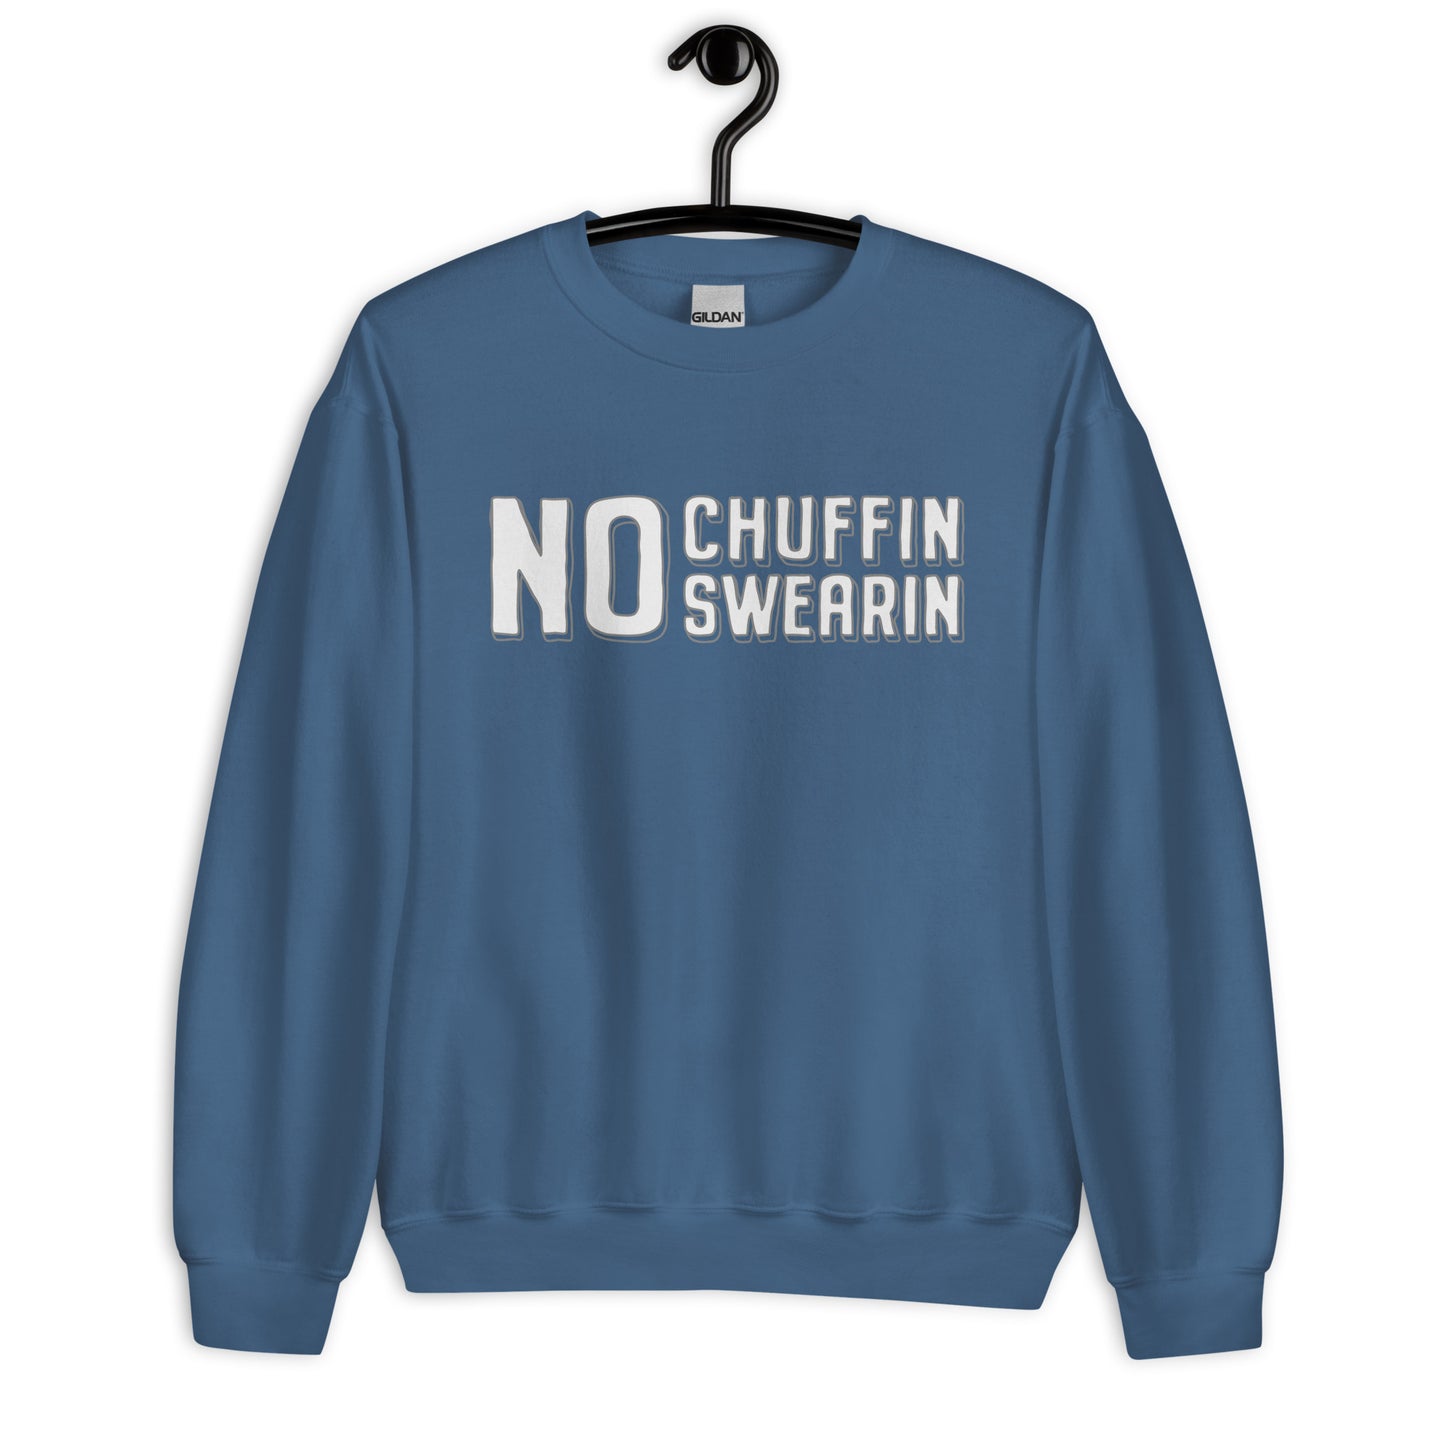 Sweater - No Chuffin Swearin